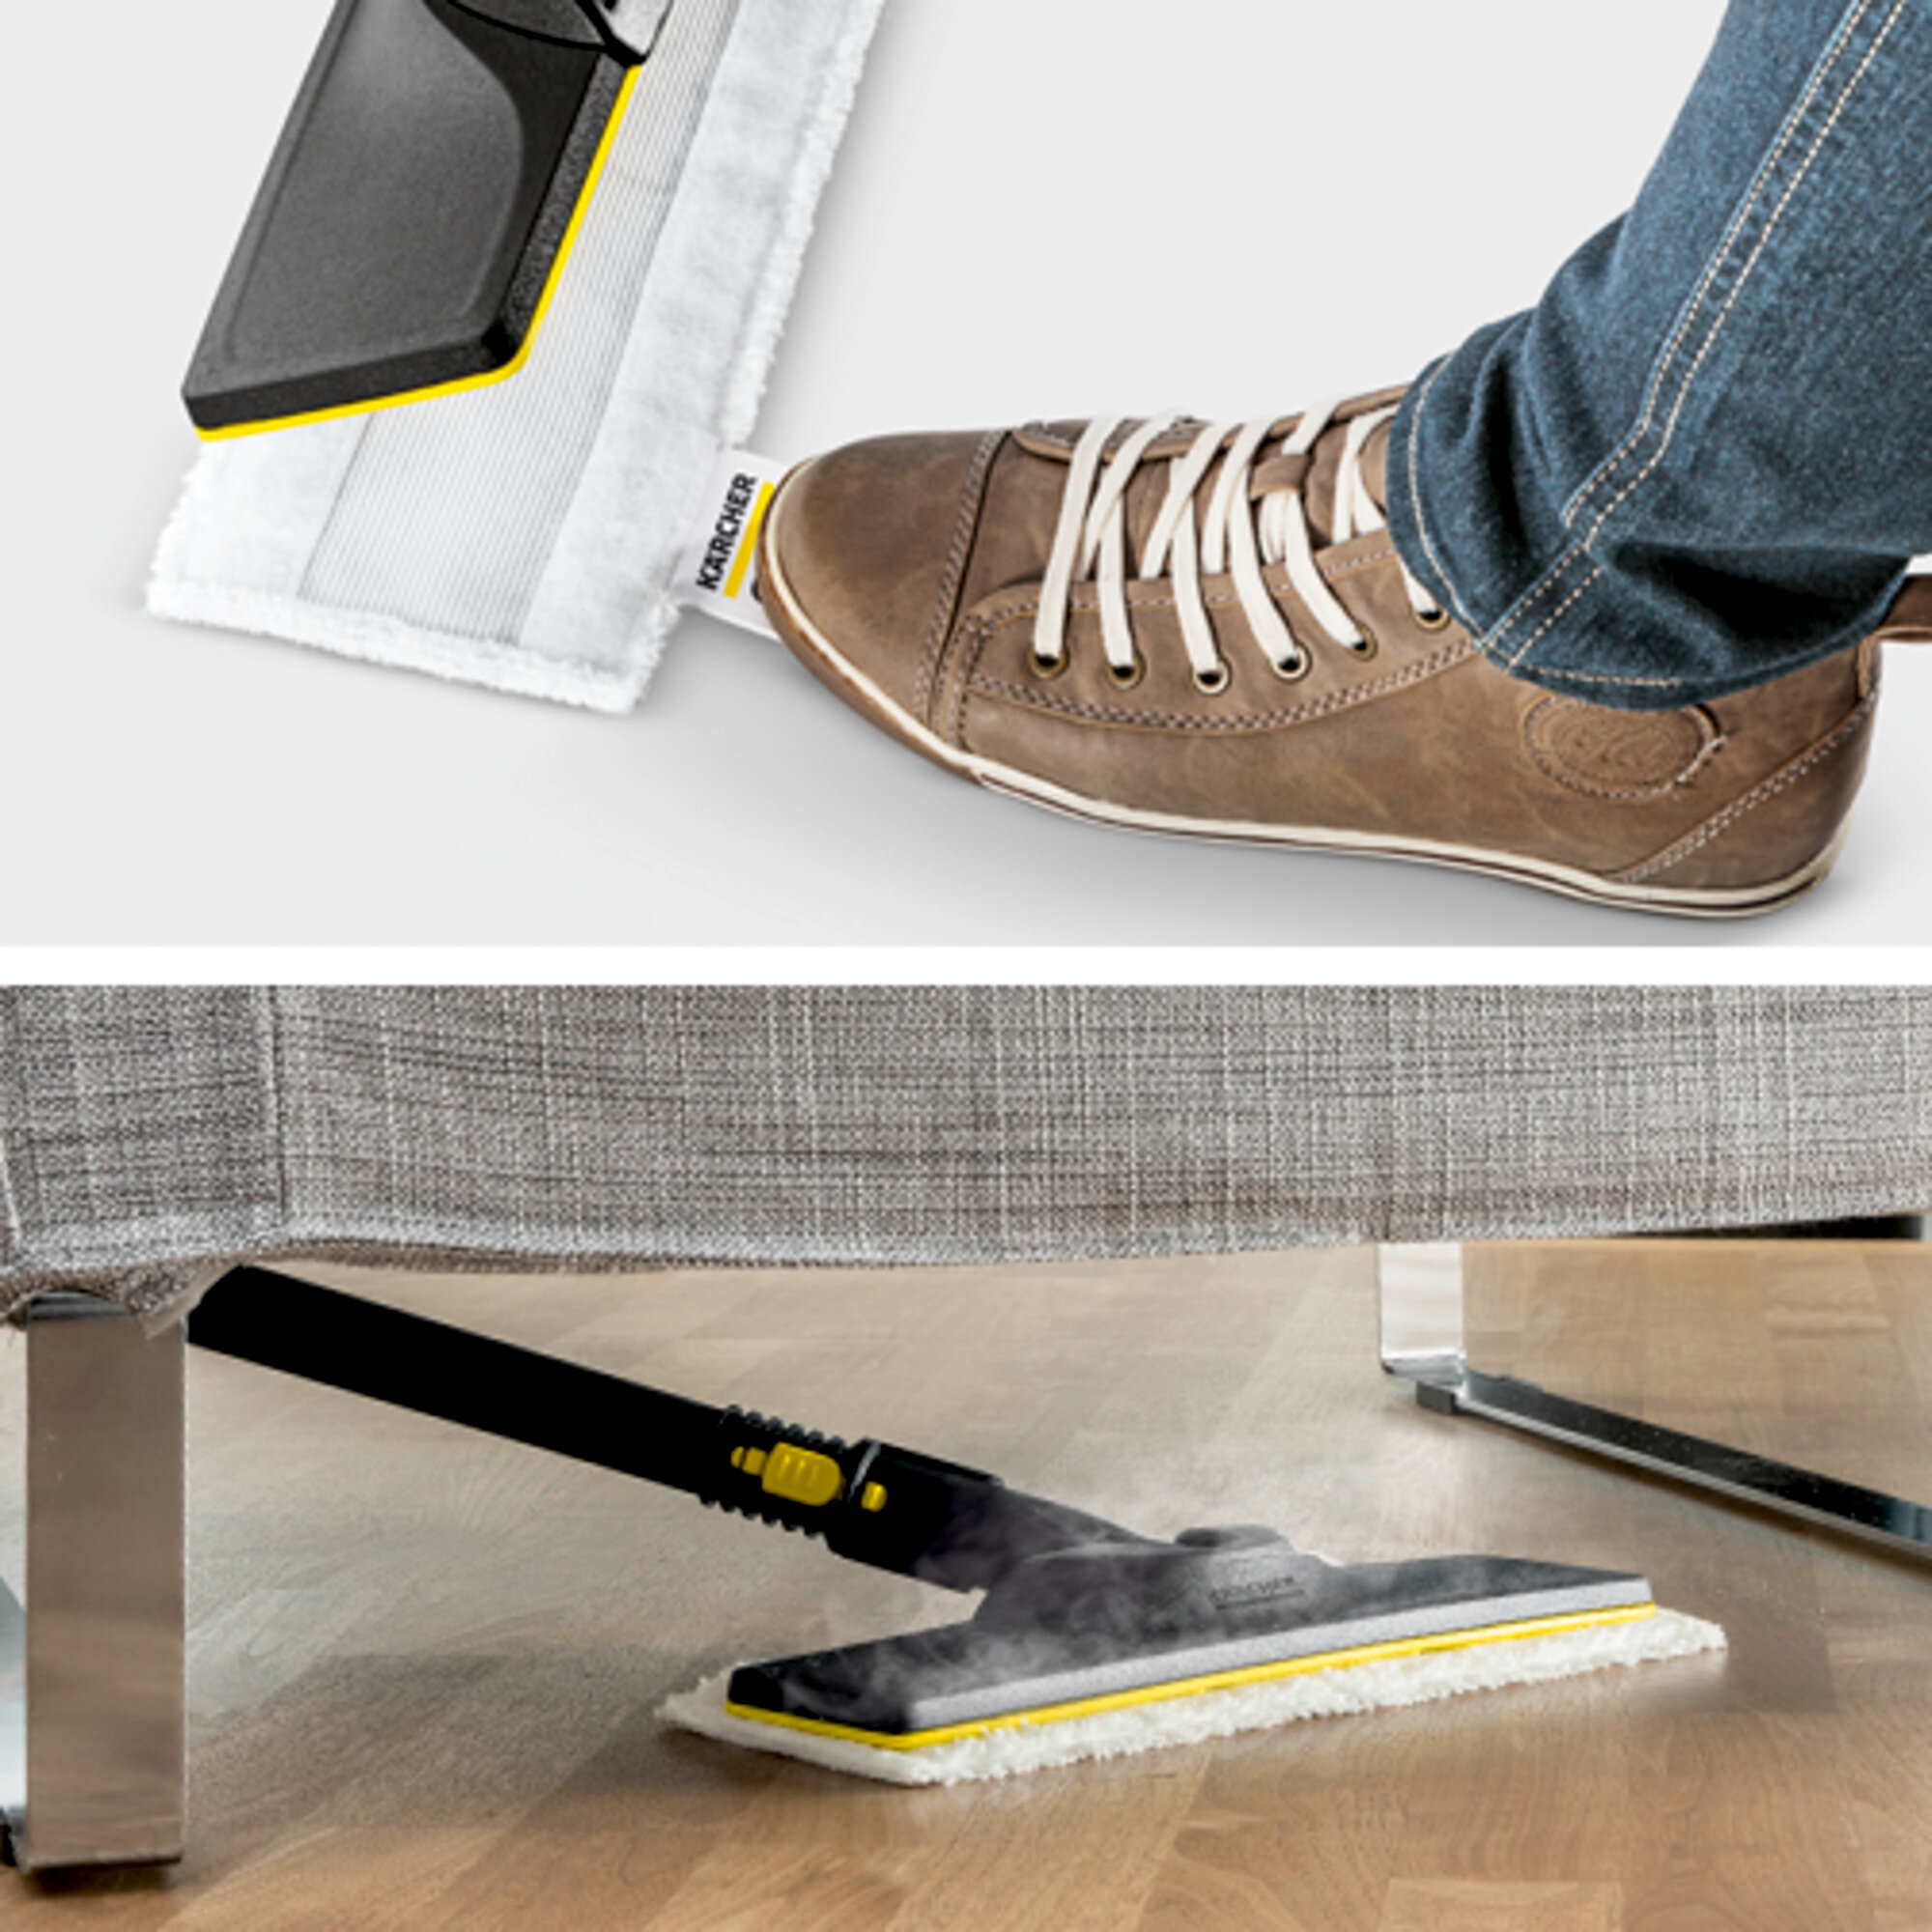 Parní cistic SC 4 EasyFix Iron: Sada na cištení podlahy EasyFix s flexibilním kloubem na podlahové hubici a pohodlným suchým zipem pro upevnení uterky na podlahu